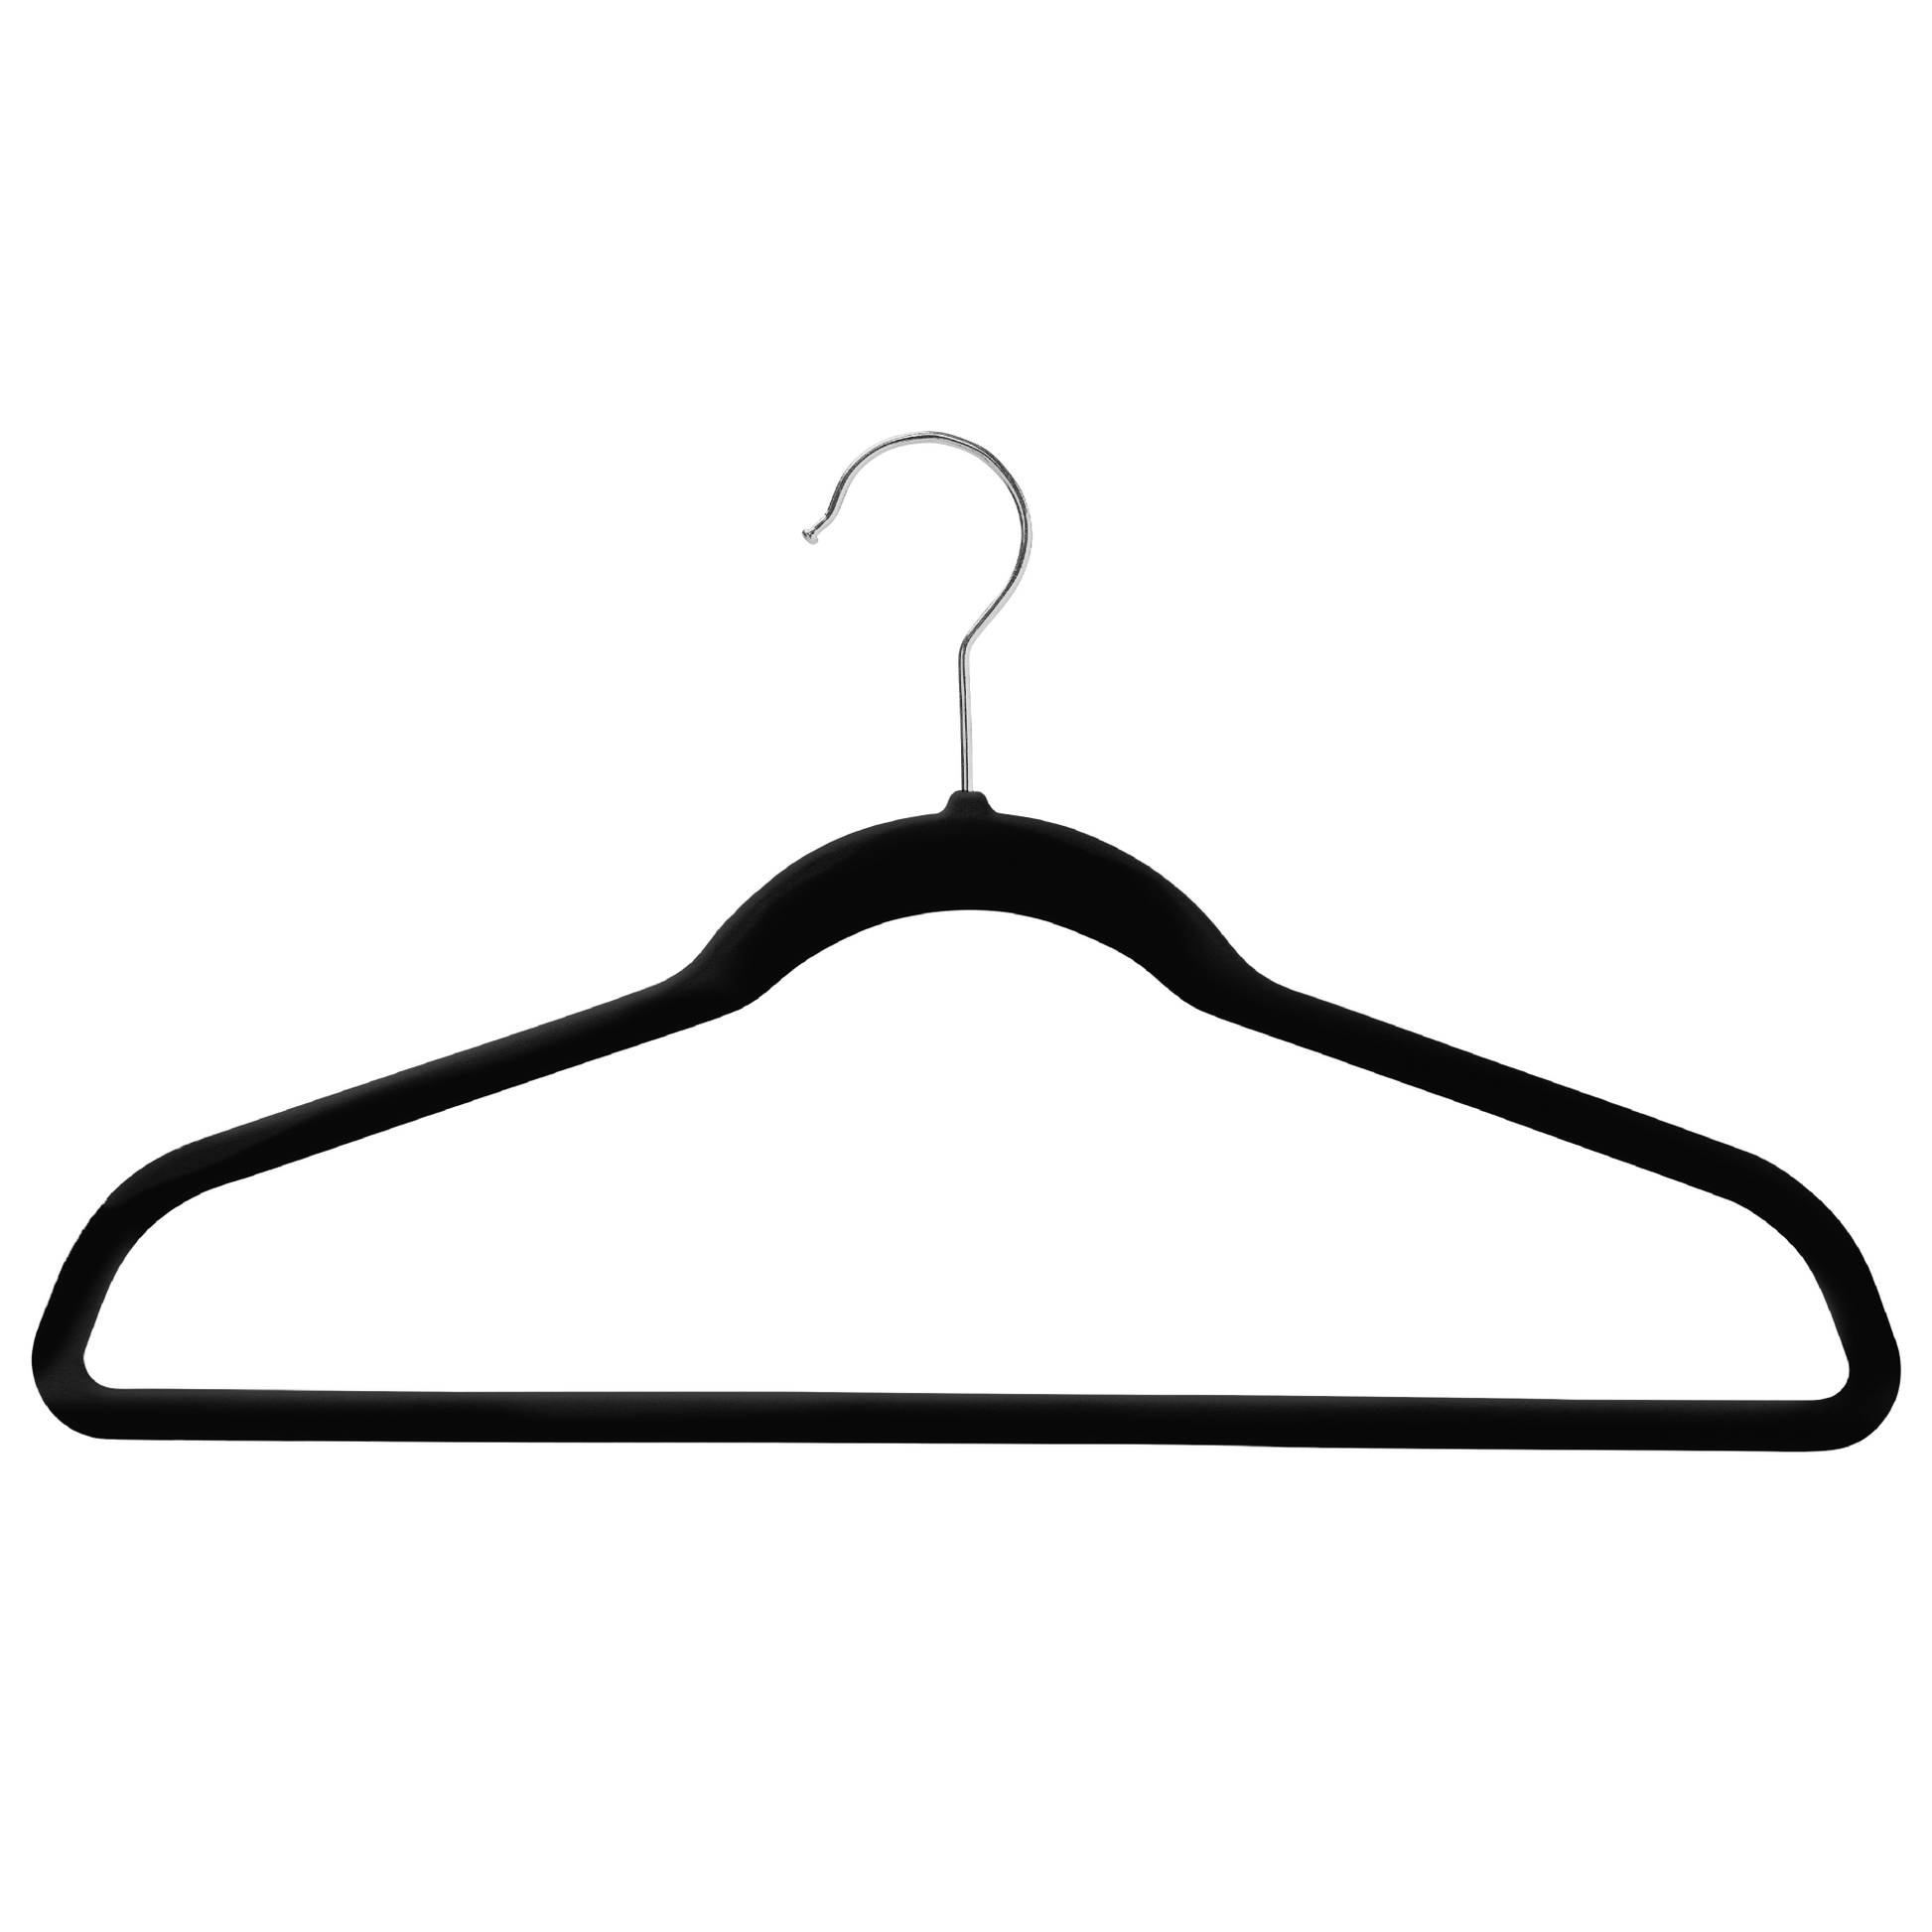 43cm Slim-Line Black Velvet Coat Hanger with Chrome Hook Sold in Bundles of 20/50/100 - Rackshop Australia